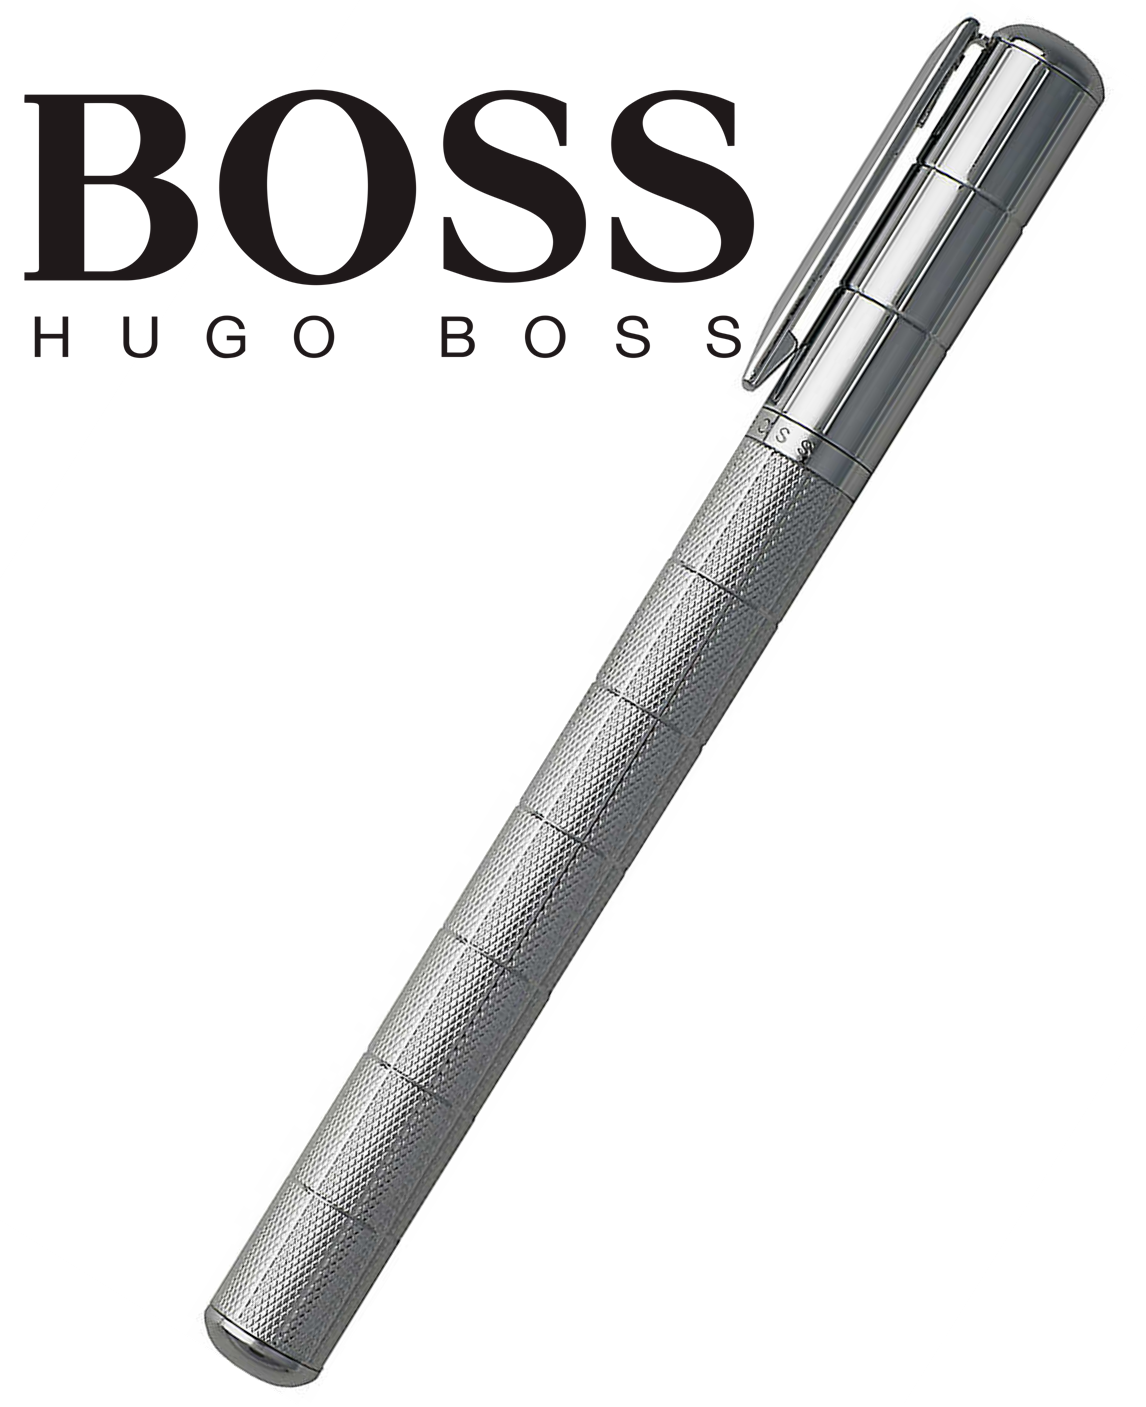 HUGO BOSS - exkluzívne plniace pero mod. Chronicle - oceľ chrómovaná so sdobením